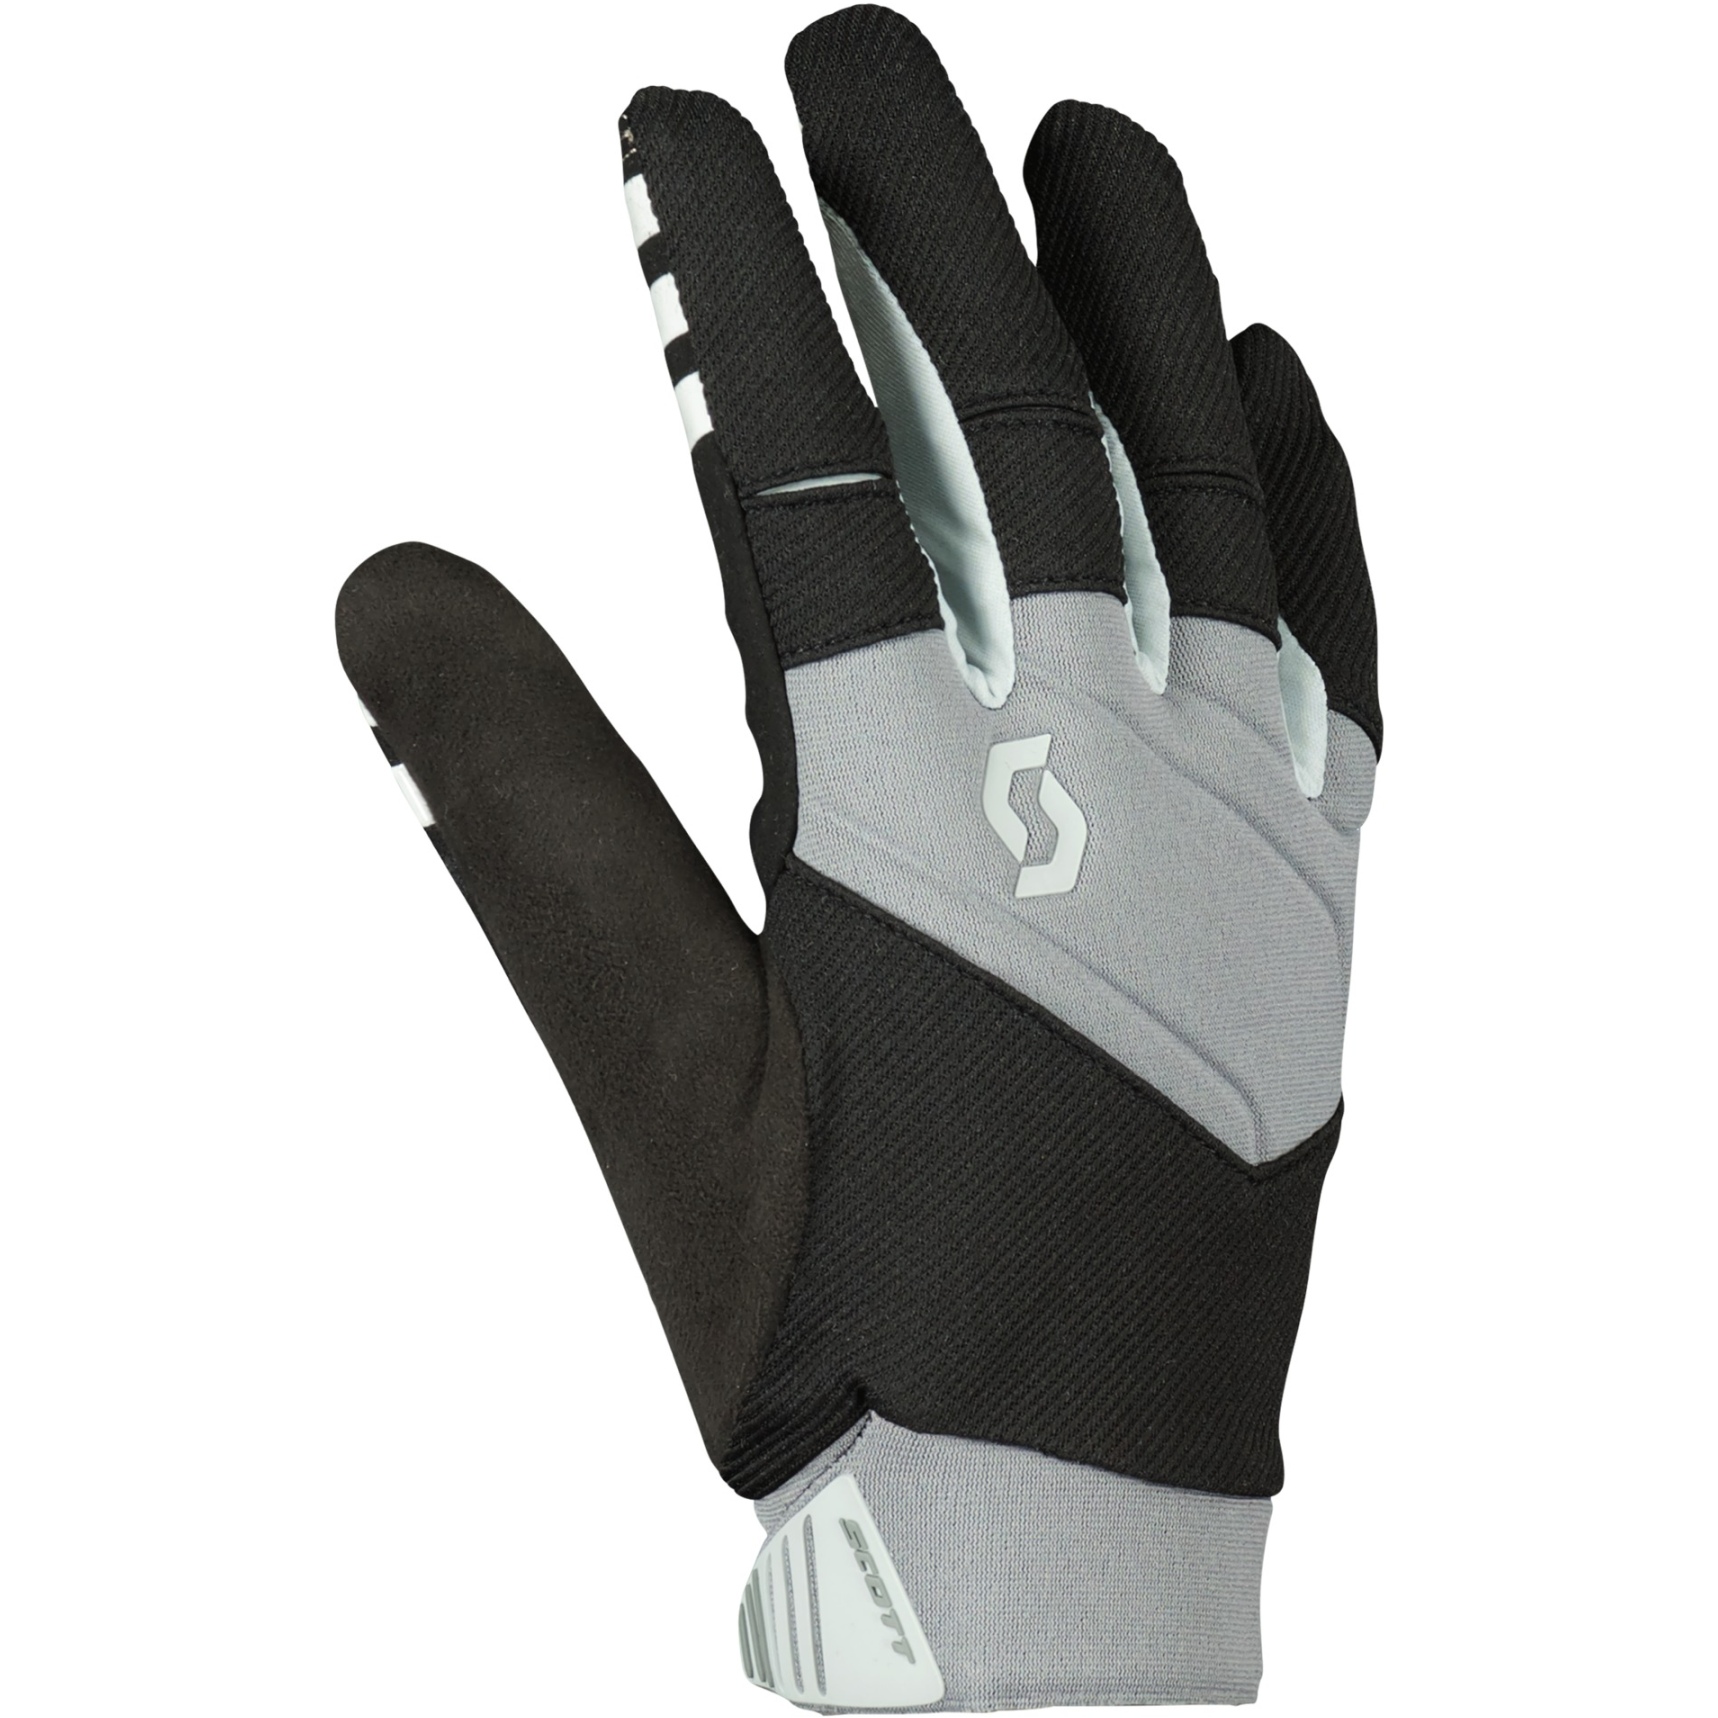 Produktbild von SCOTT Enduro LF Handschuhe - hellgrau/schwarz